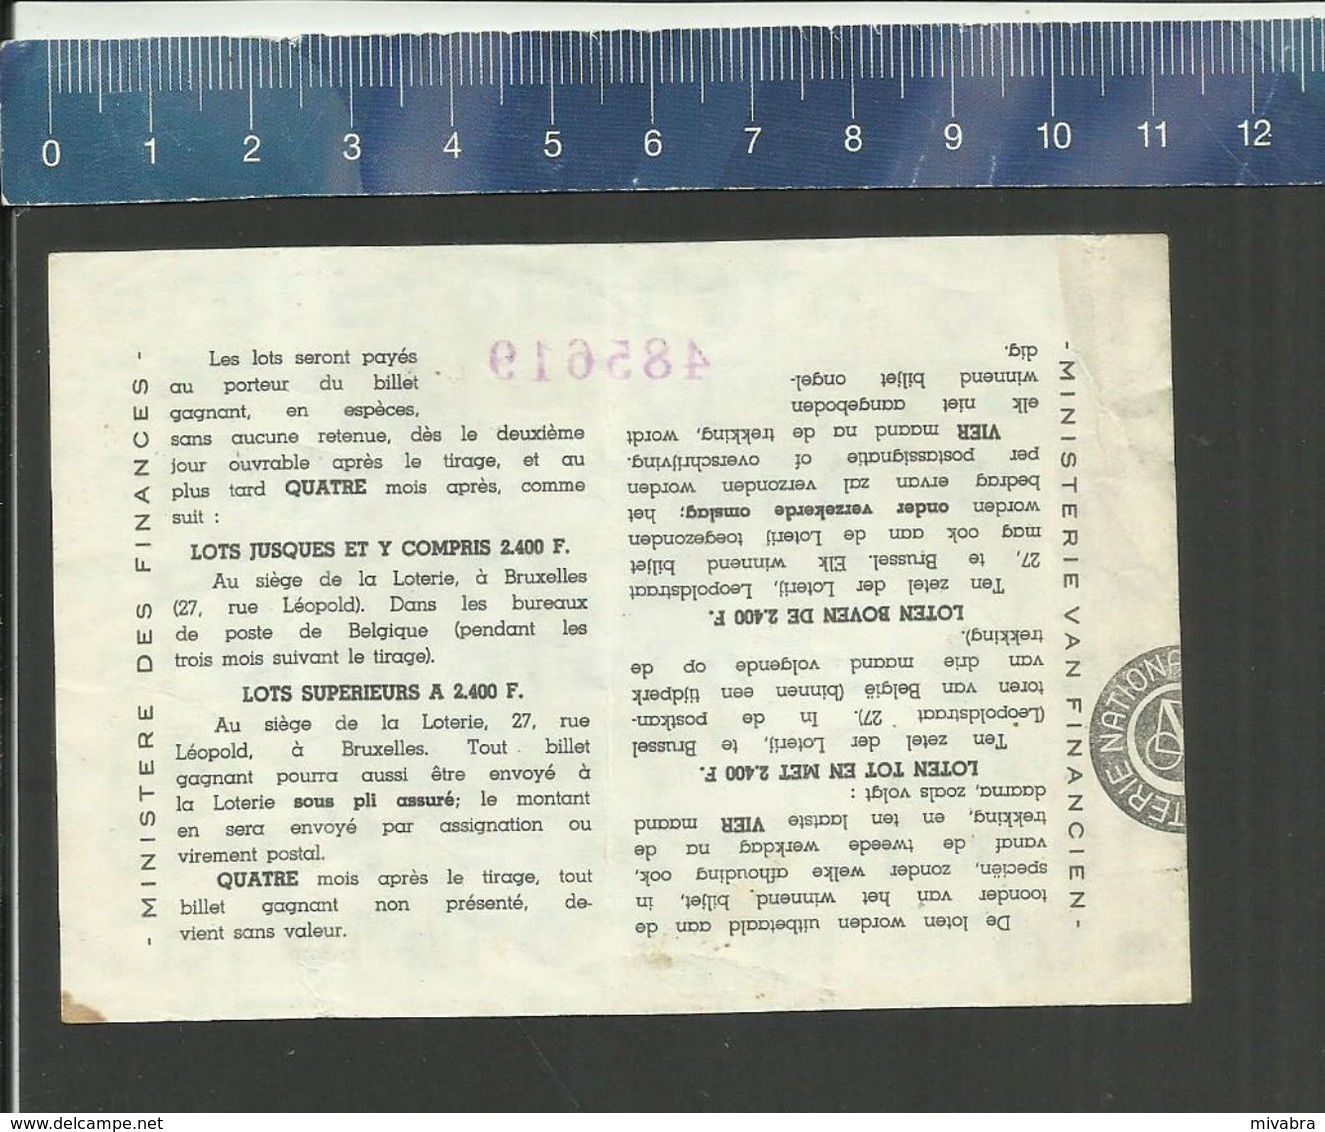 NATIONALE LOTERIJ - LOTERIE NATIONALE 1964 NEDERBRAKEL - Biglietti Della Lotteria